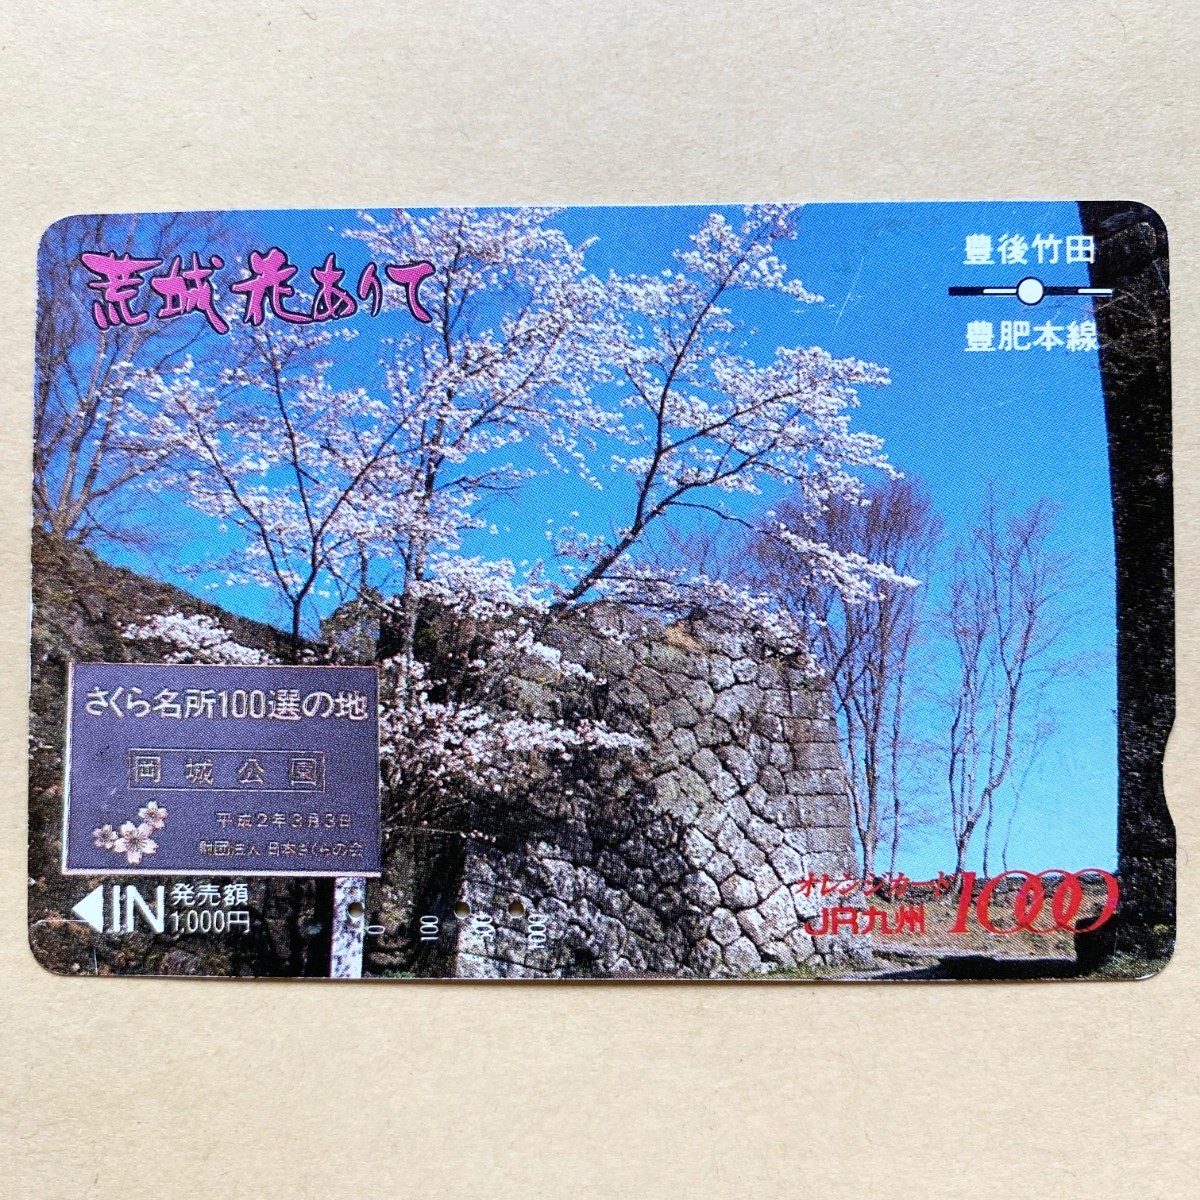 【使用済】 オレンジカード JR九州 荒城花ありて さくら名所100選の地 岡城公園_画像1